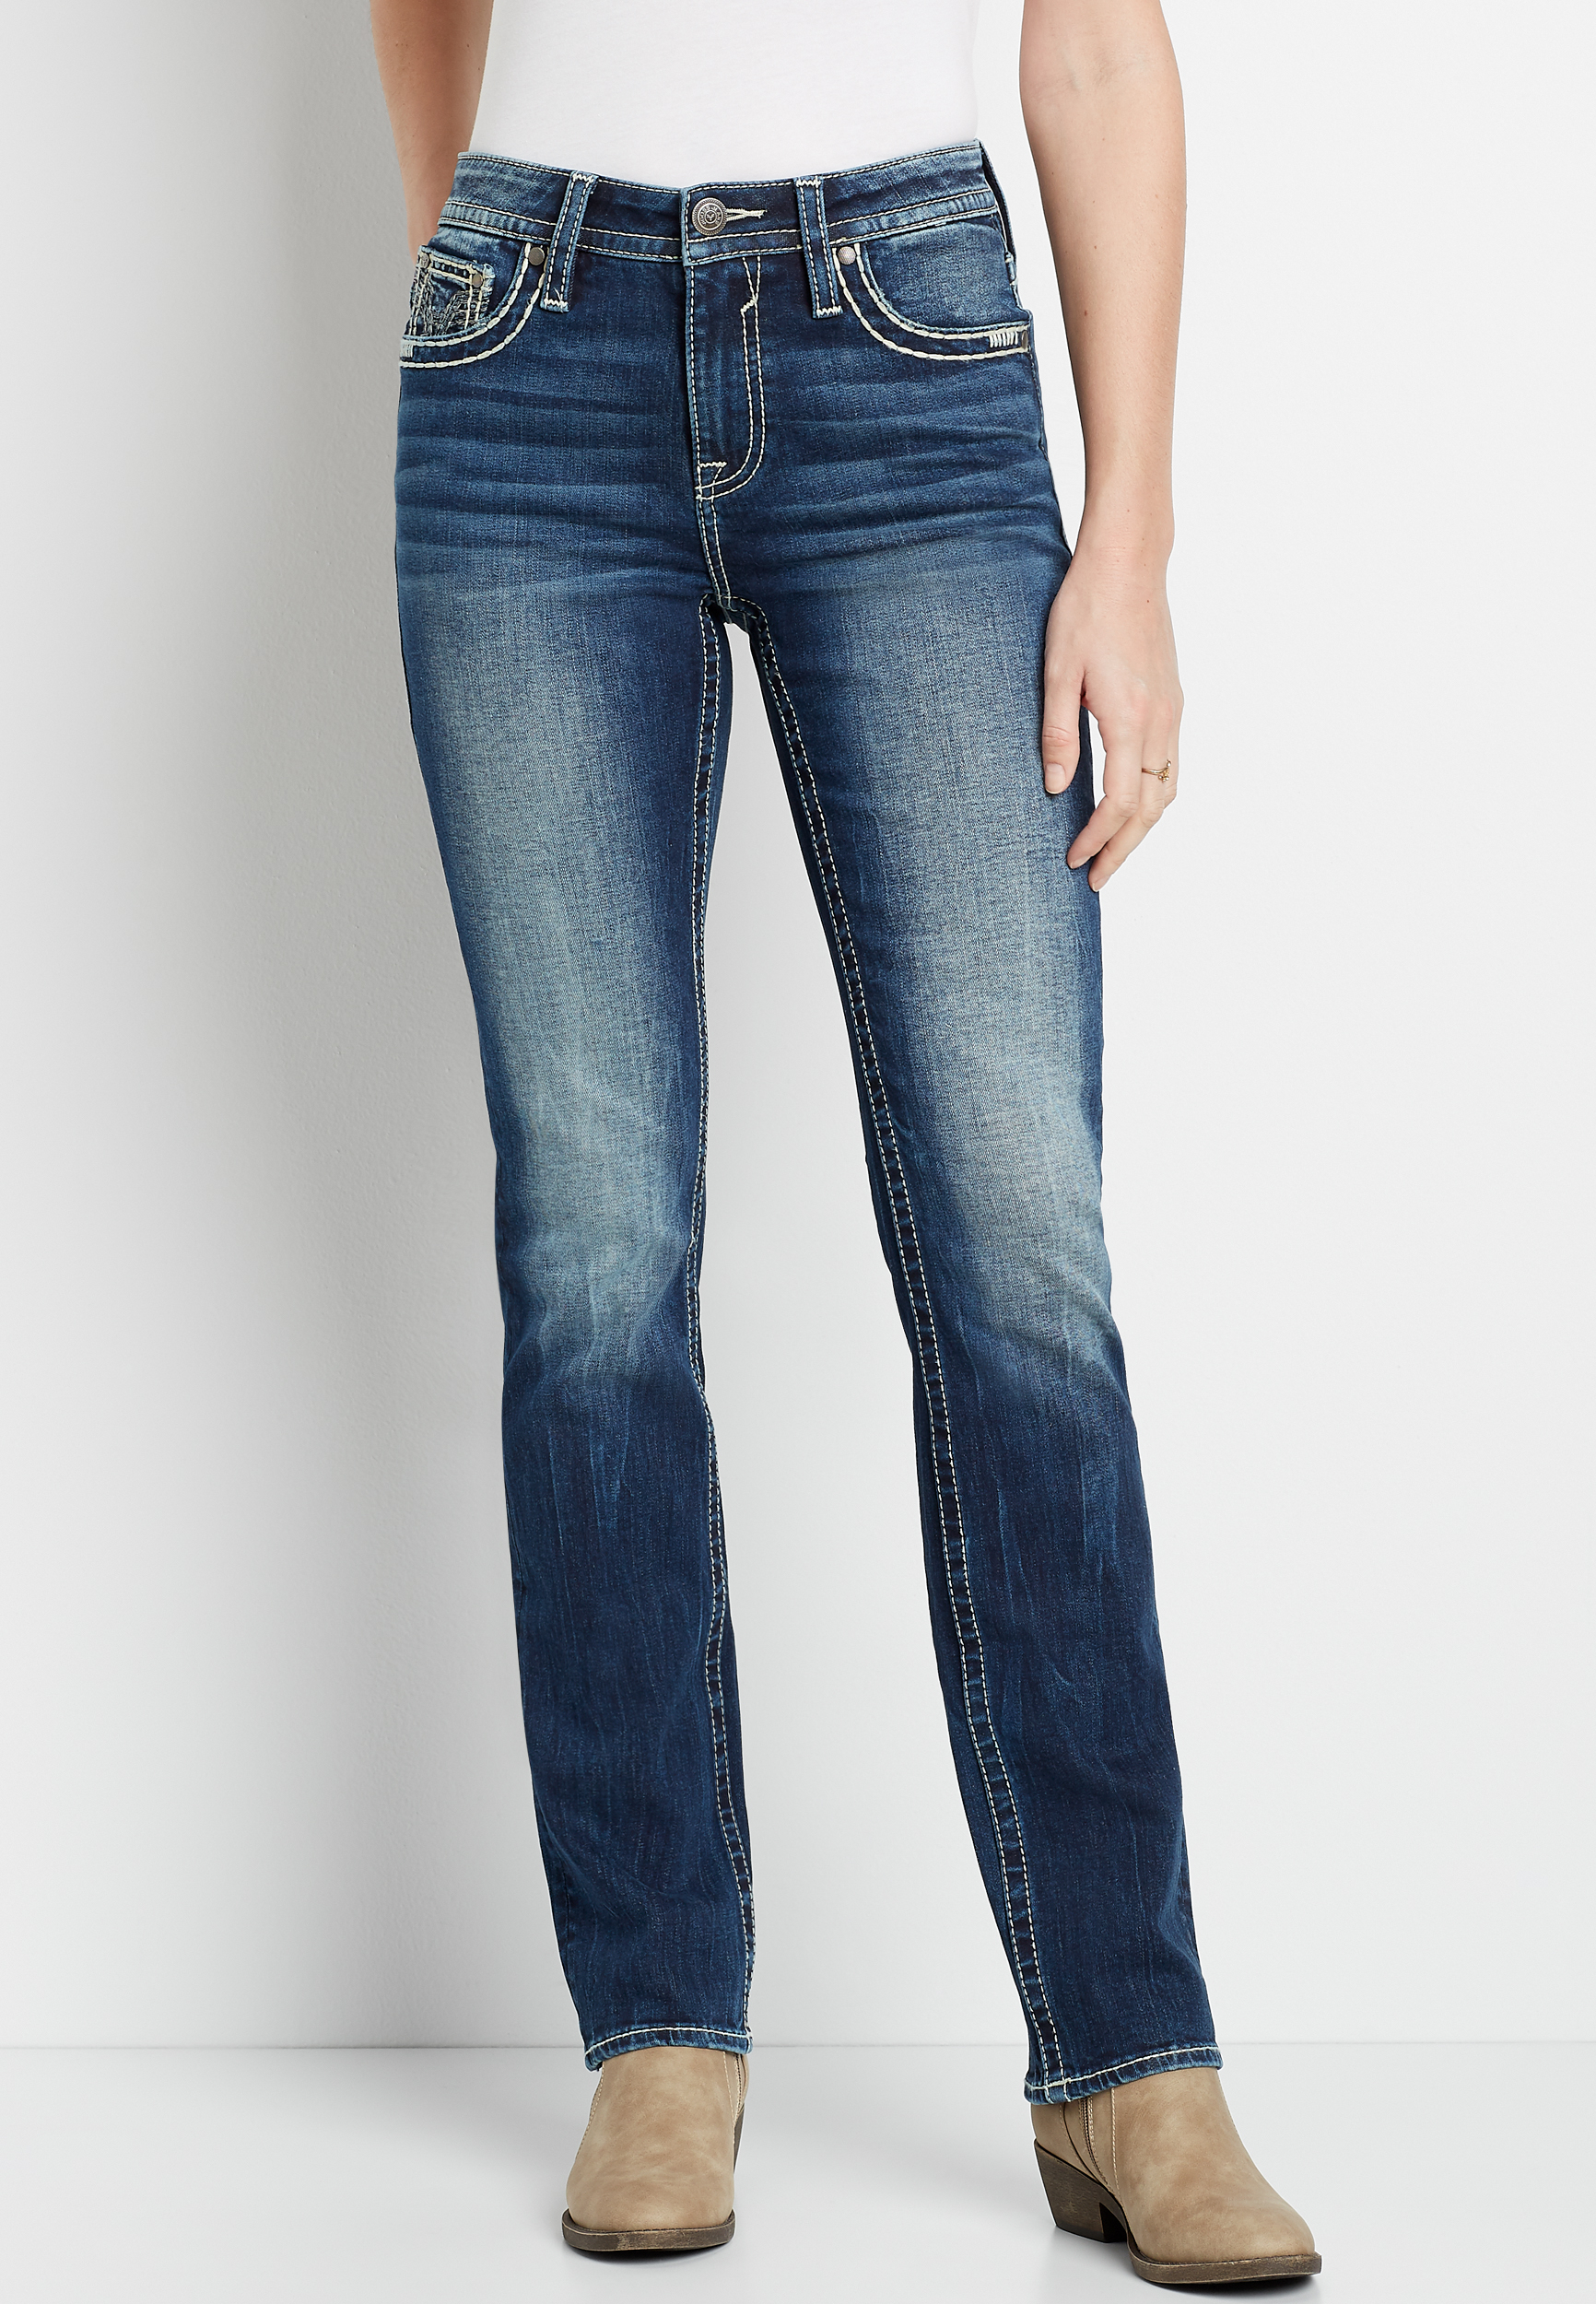 size 6 women jeans